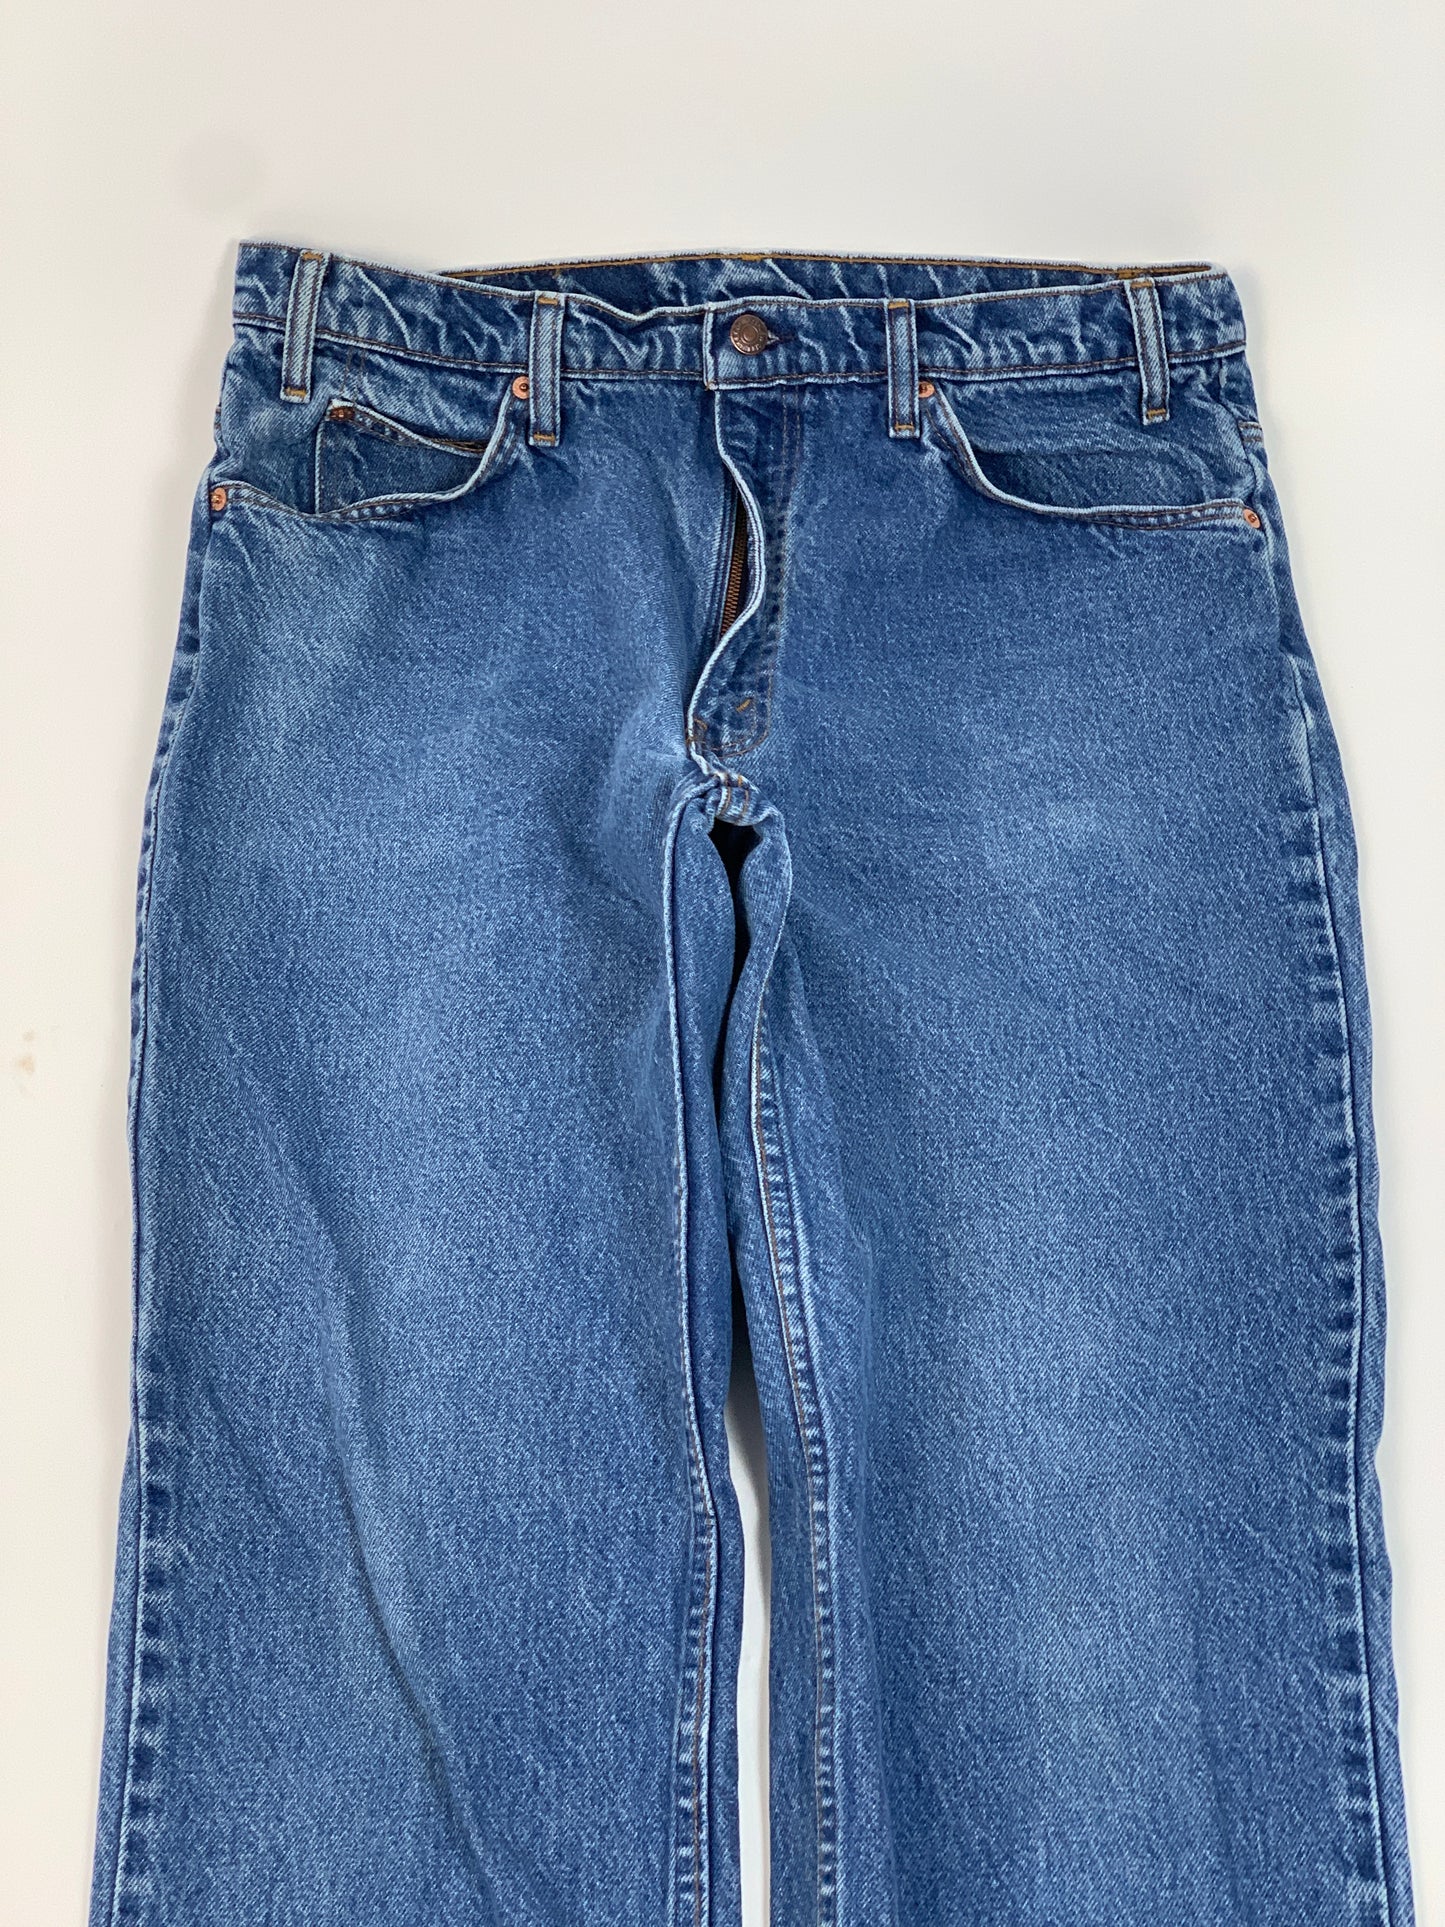 Levis Orange Tab Vintage Jeans - 34